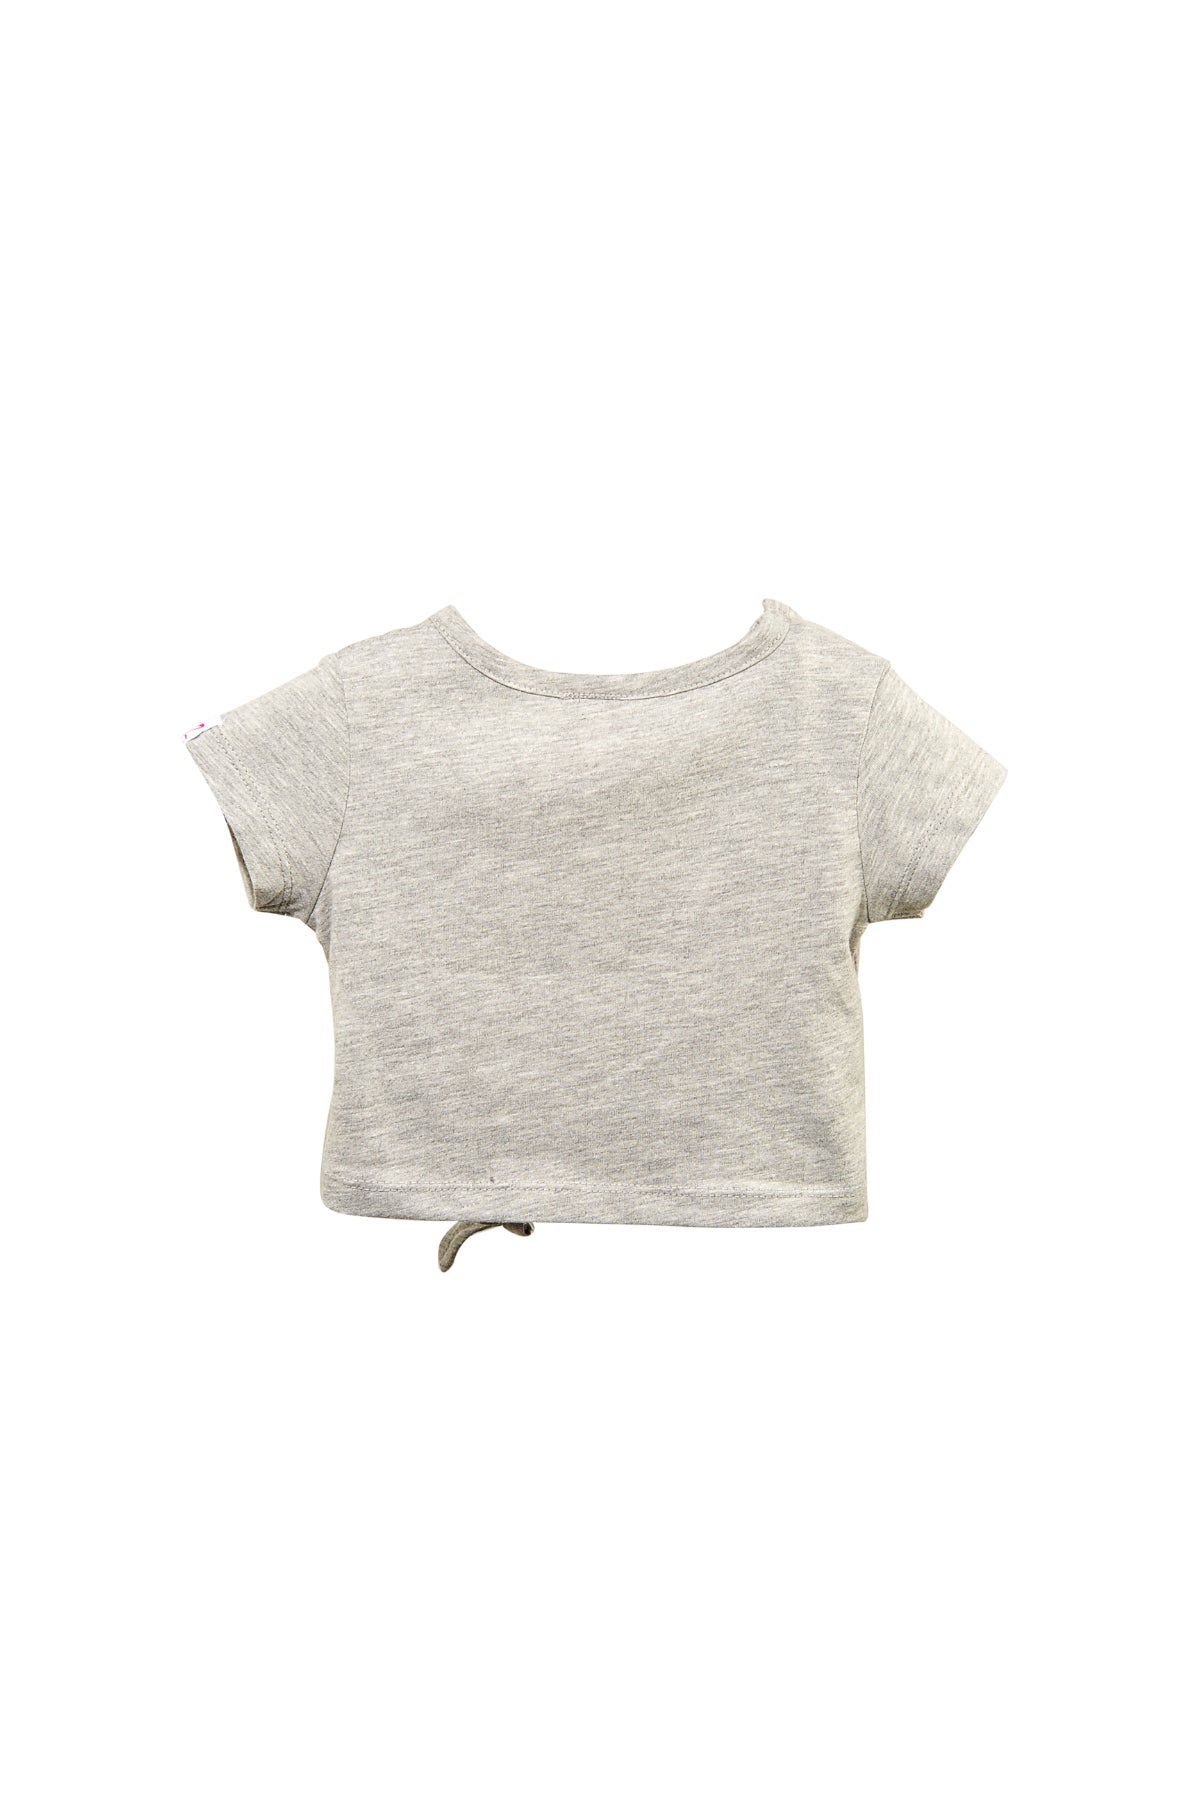 Kız Bebek Gri Bağlamalı Crop T-Shirt (9ay-4yaş)-4